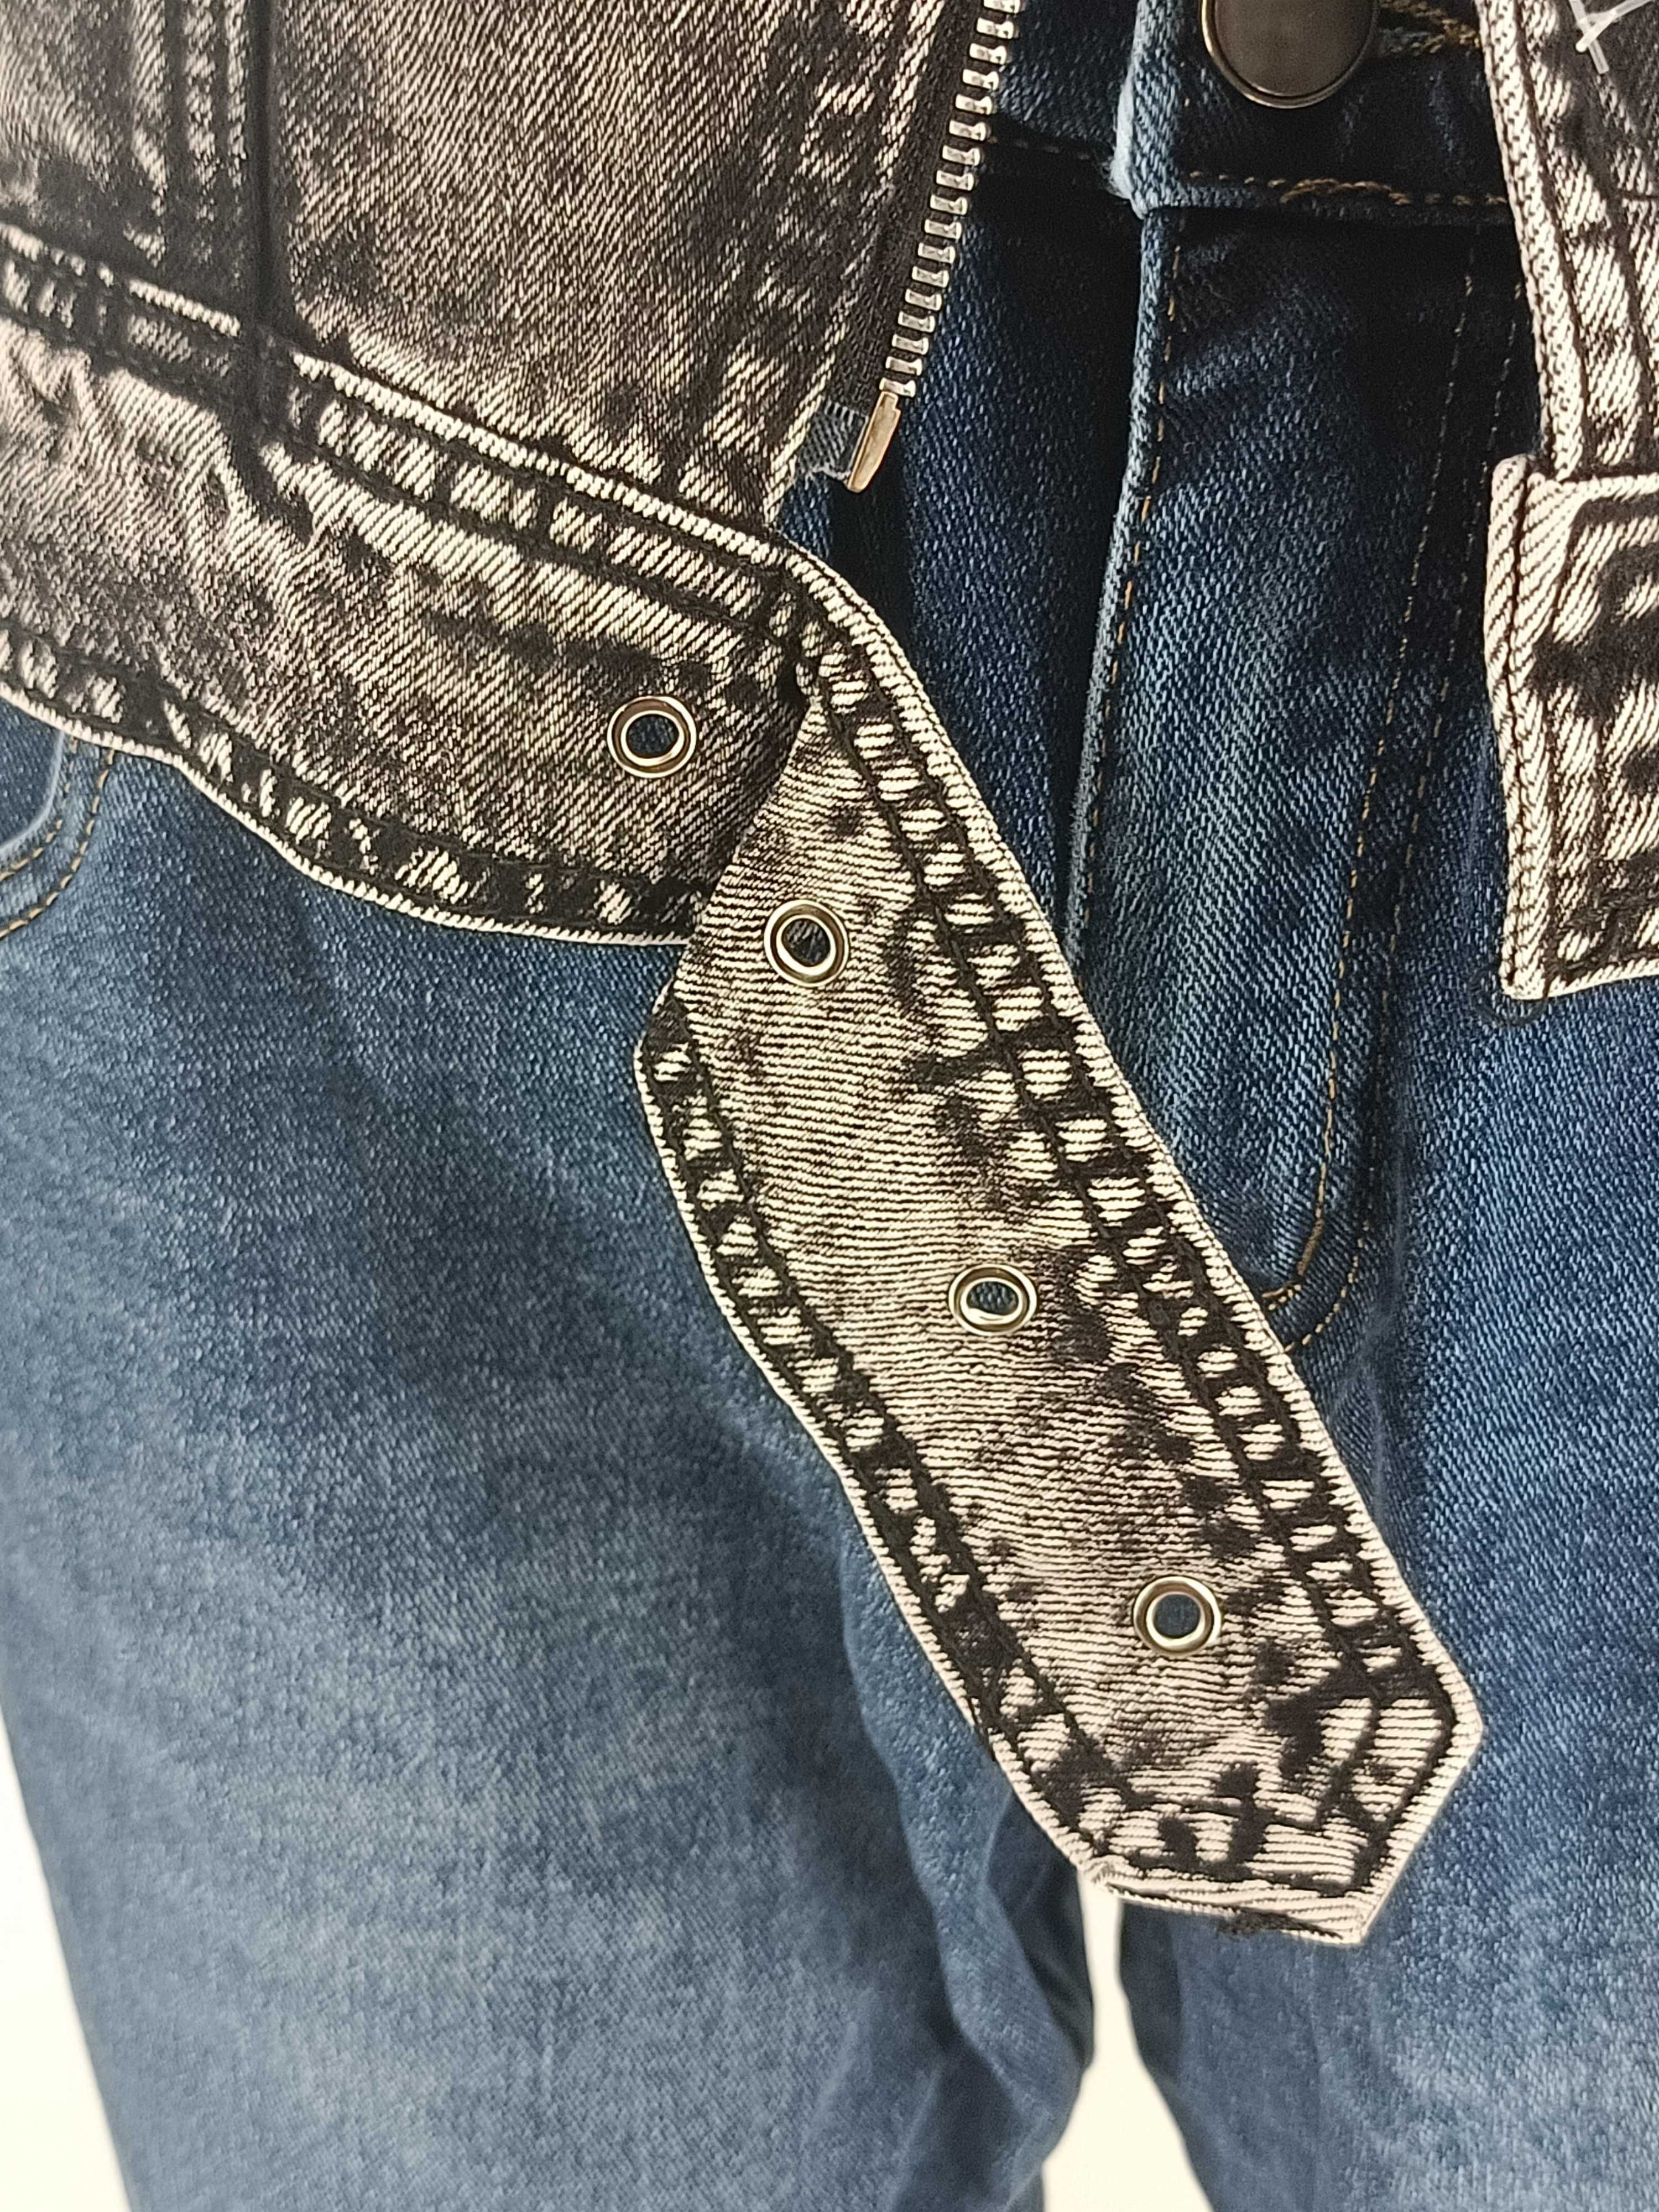 Kurtka jeansowa RAMONESKA szara XL 42